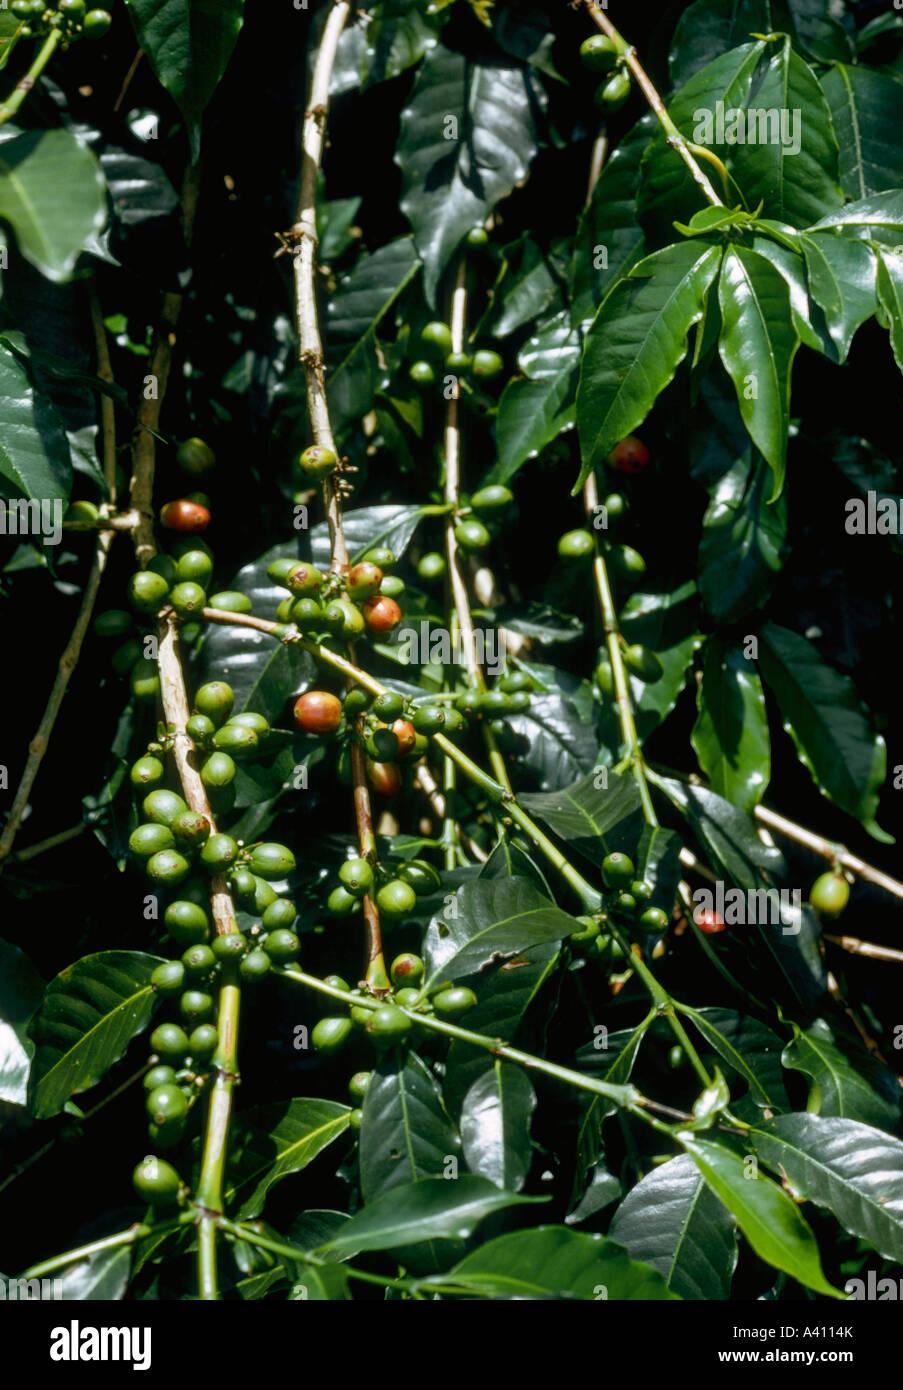 Le café, Coffea arabica, des fruits appelés "cerises" Banque D'Images